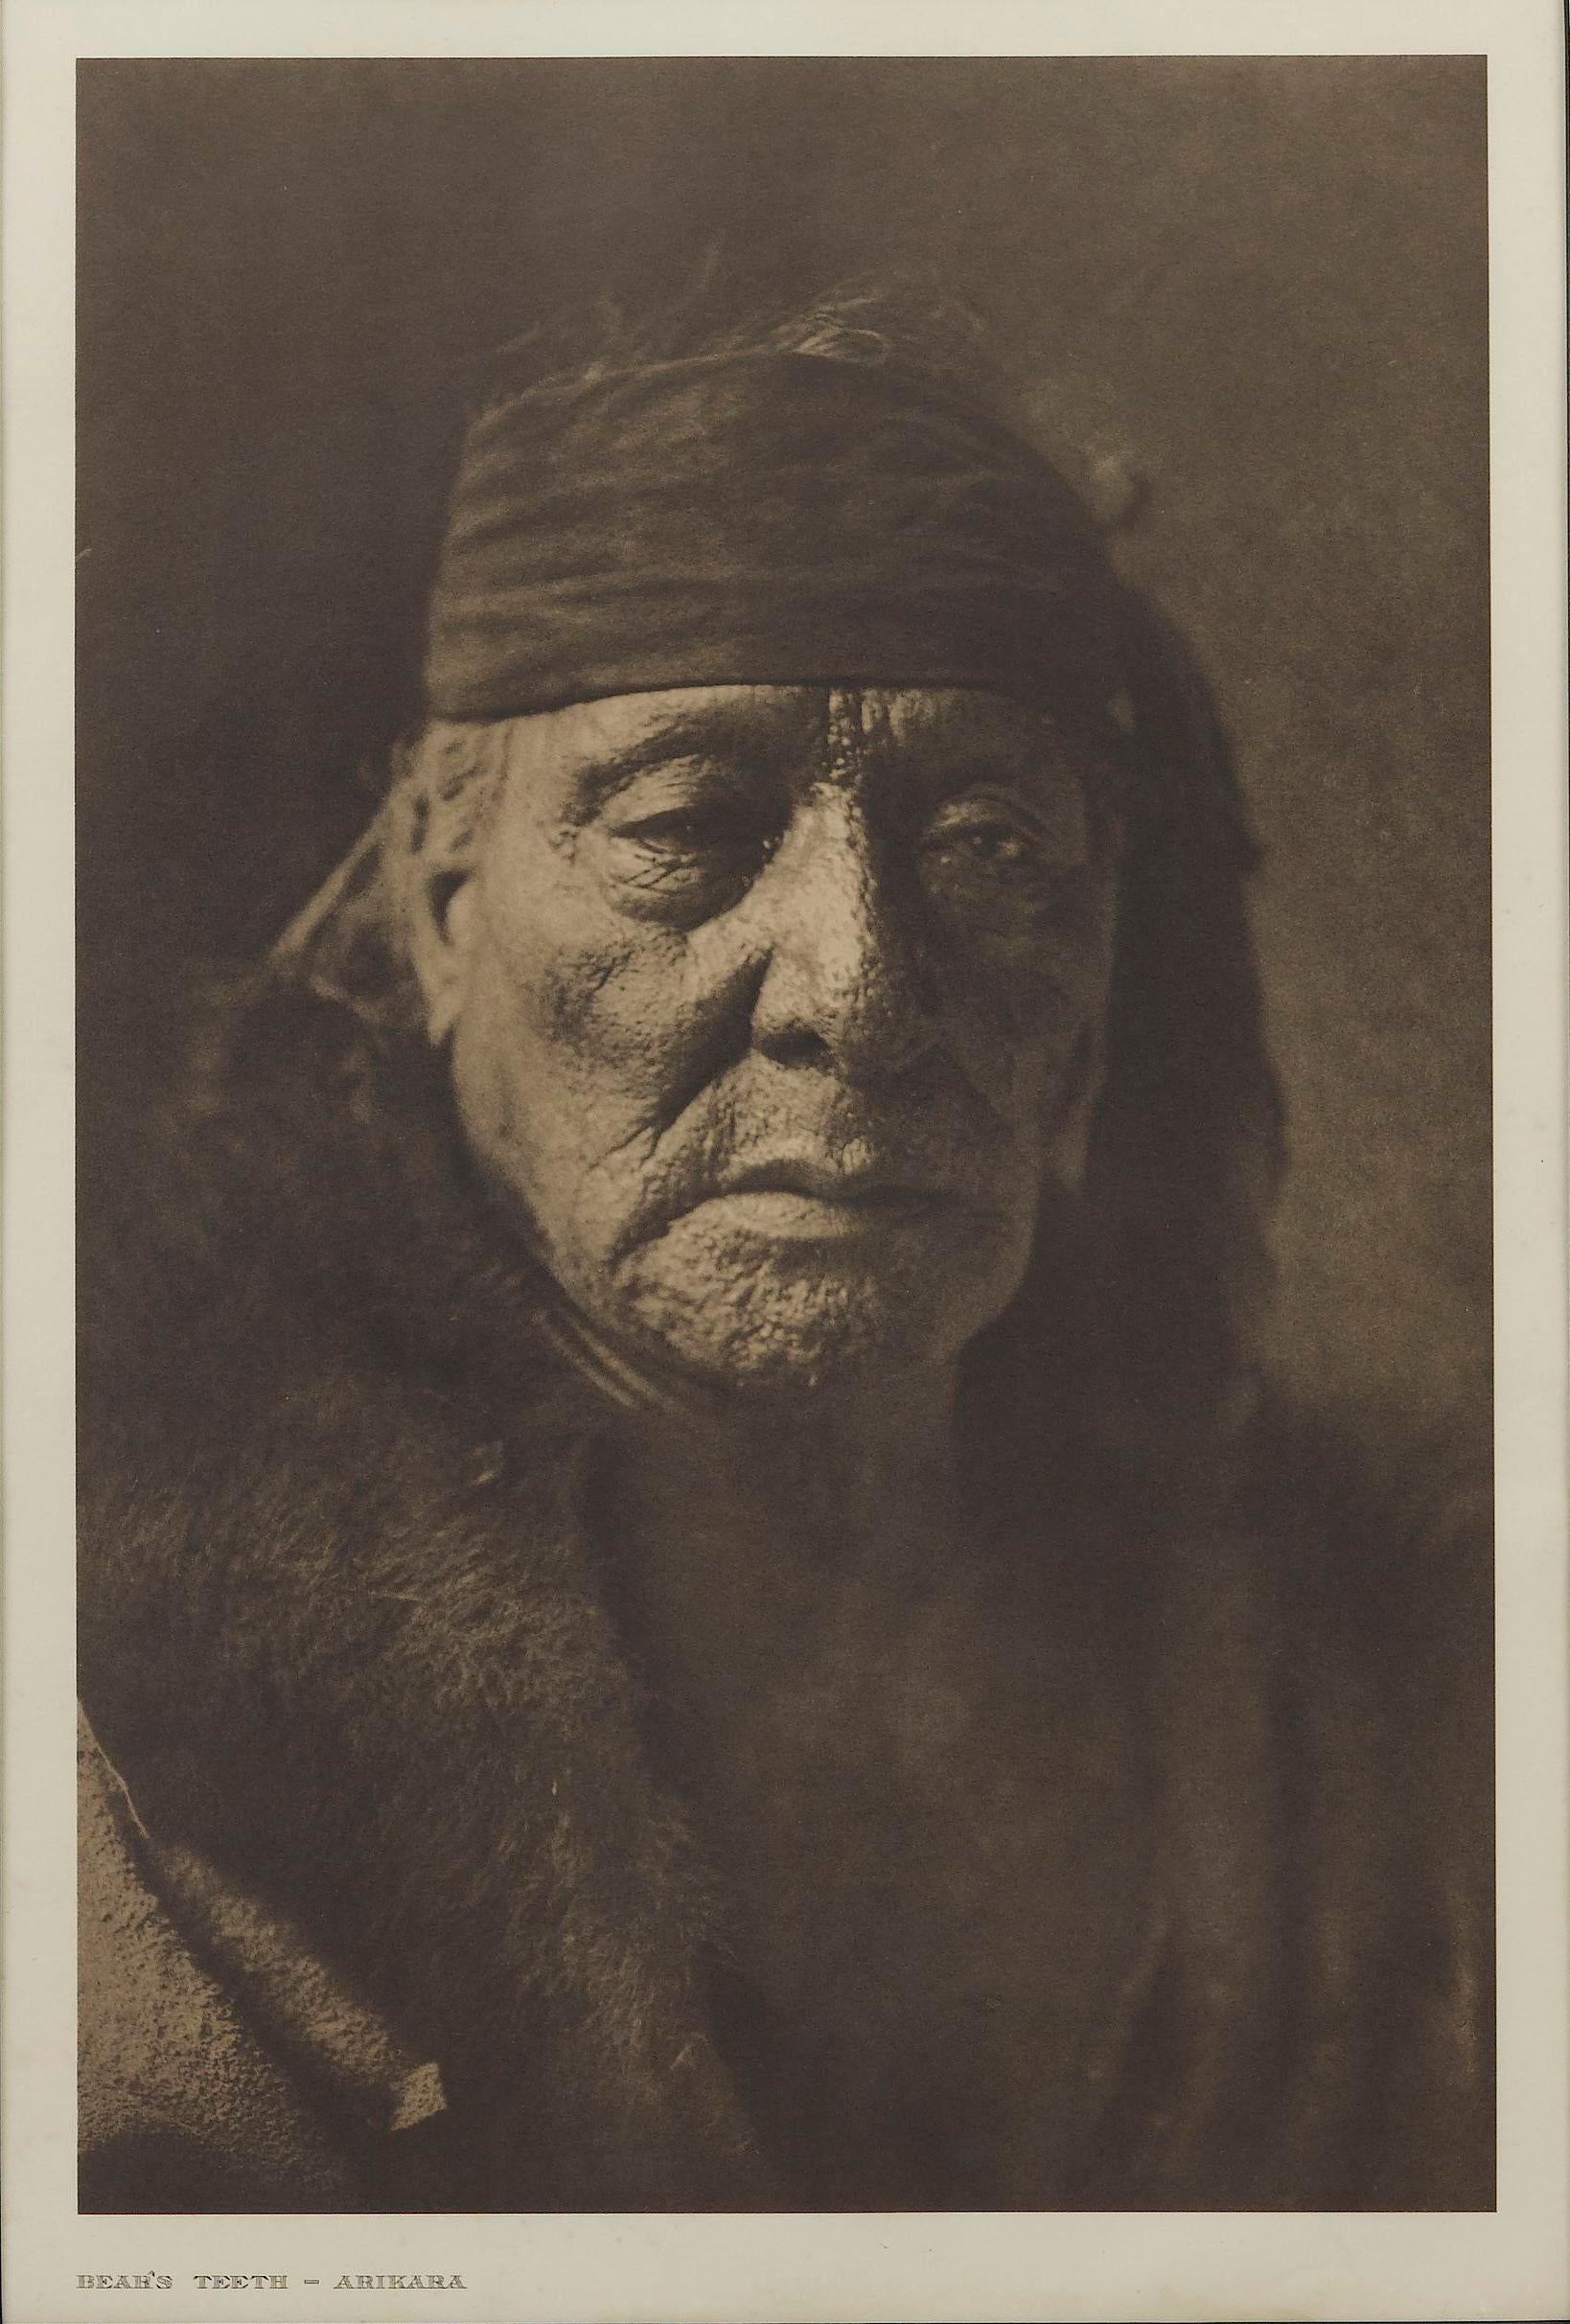 L'ouvrage présente une belle photogravure d'Edward Curtis représentant Bear's Teeth de la tribu Arikara. L'image est la planche 154 du portfolio supplémentaire 5 du projet épique d'Edward Curtis, The North American Indian. La légende de cette image,